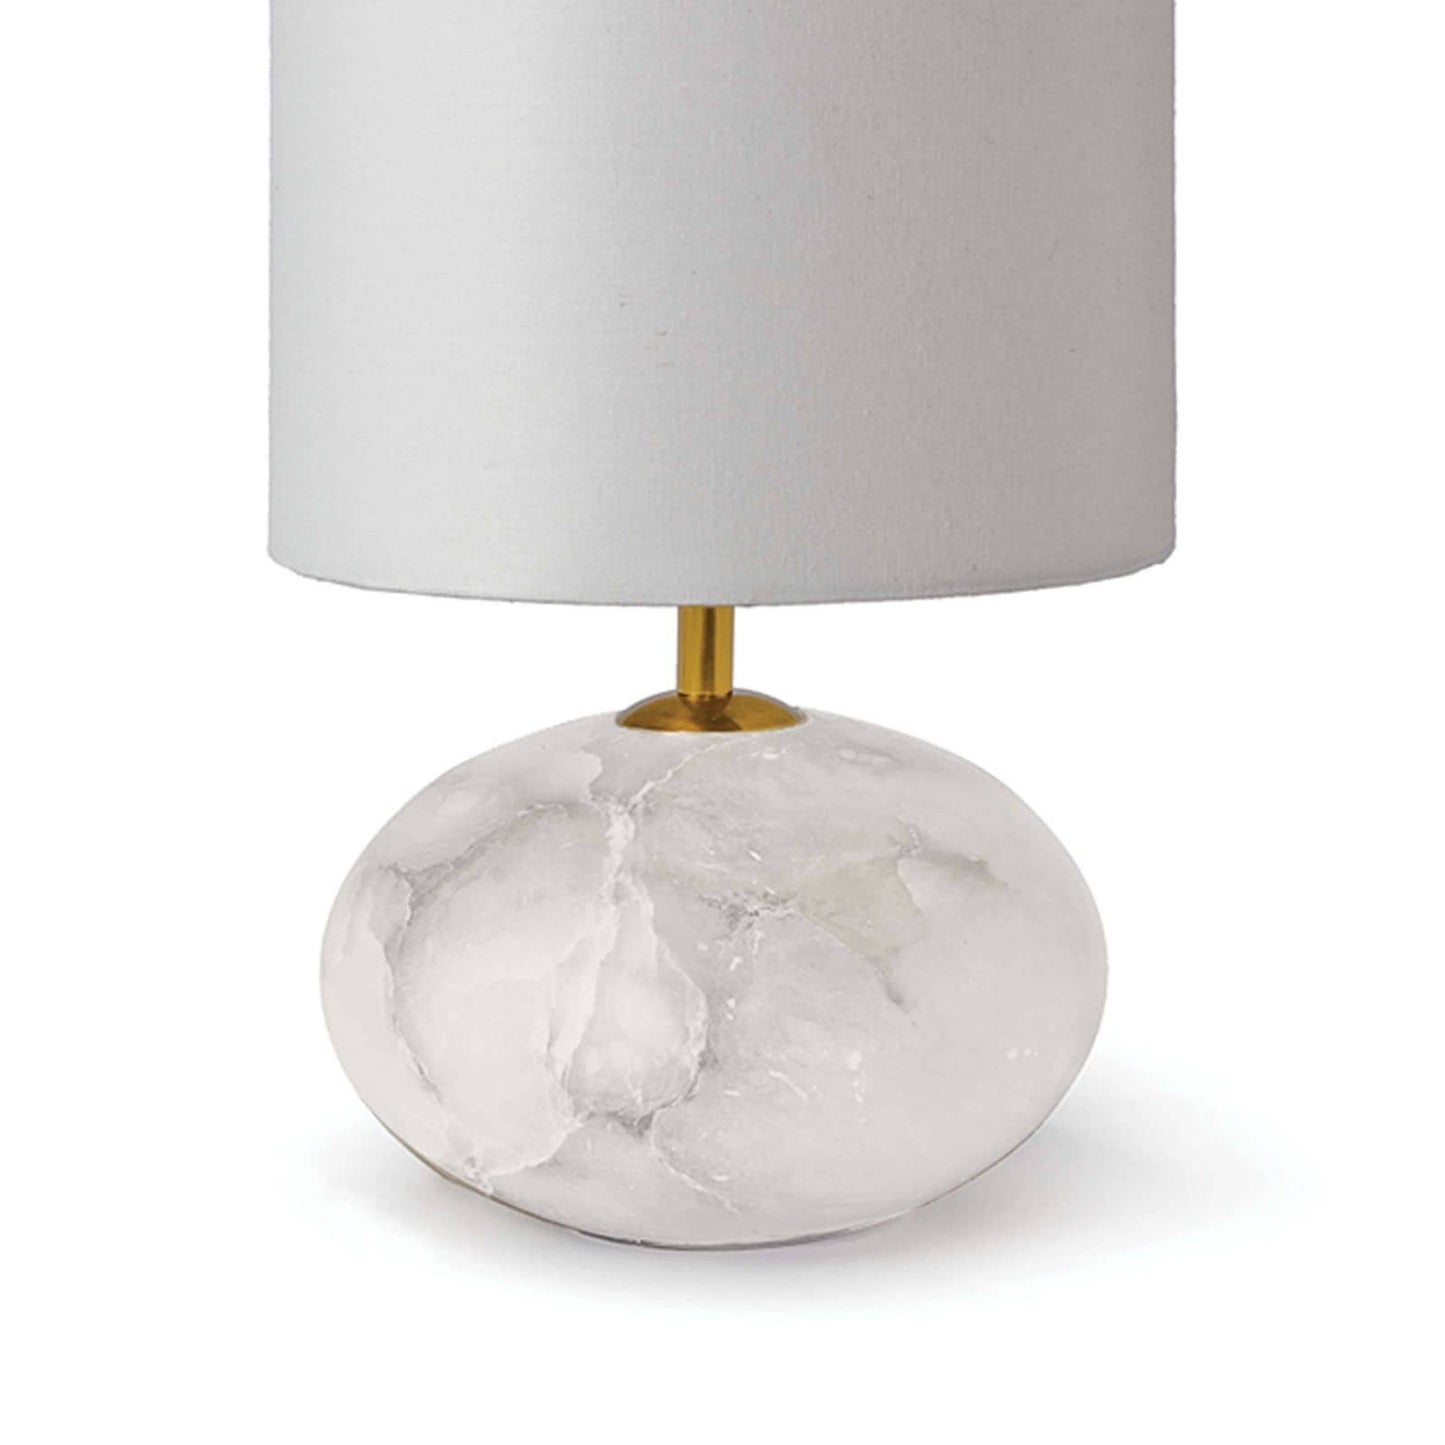 Alabaster Mini Lamp